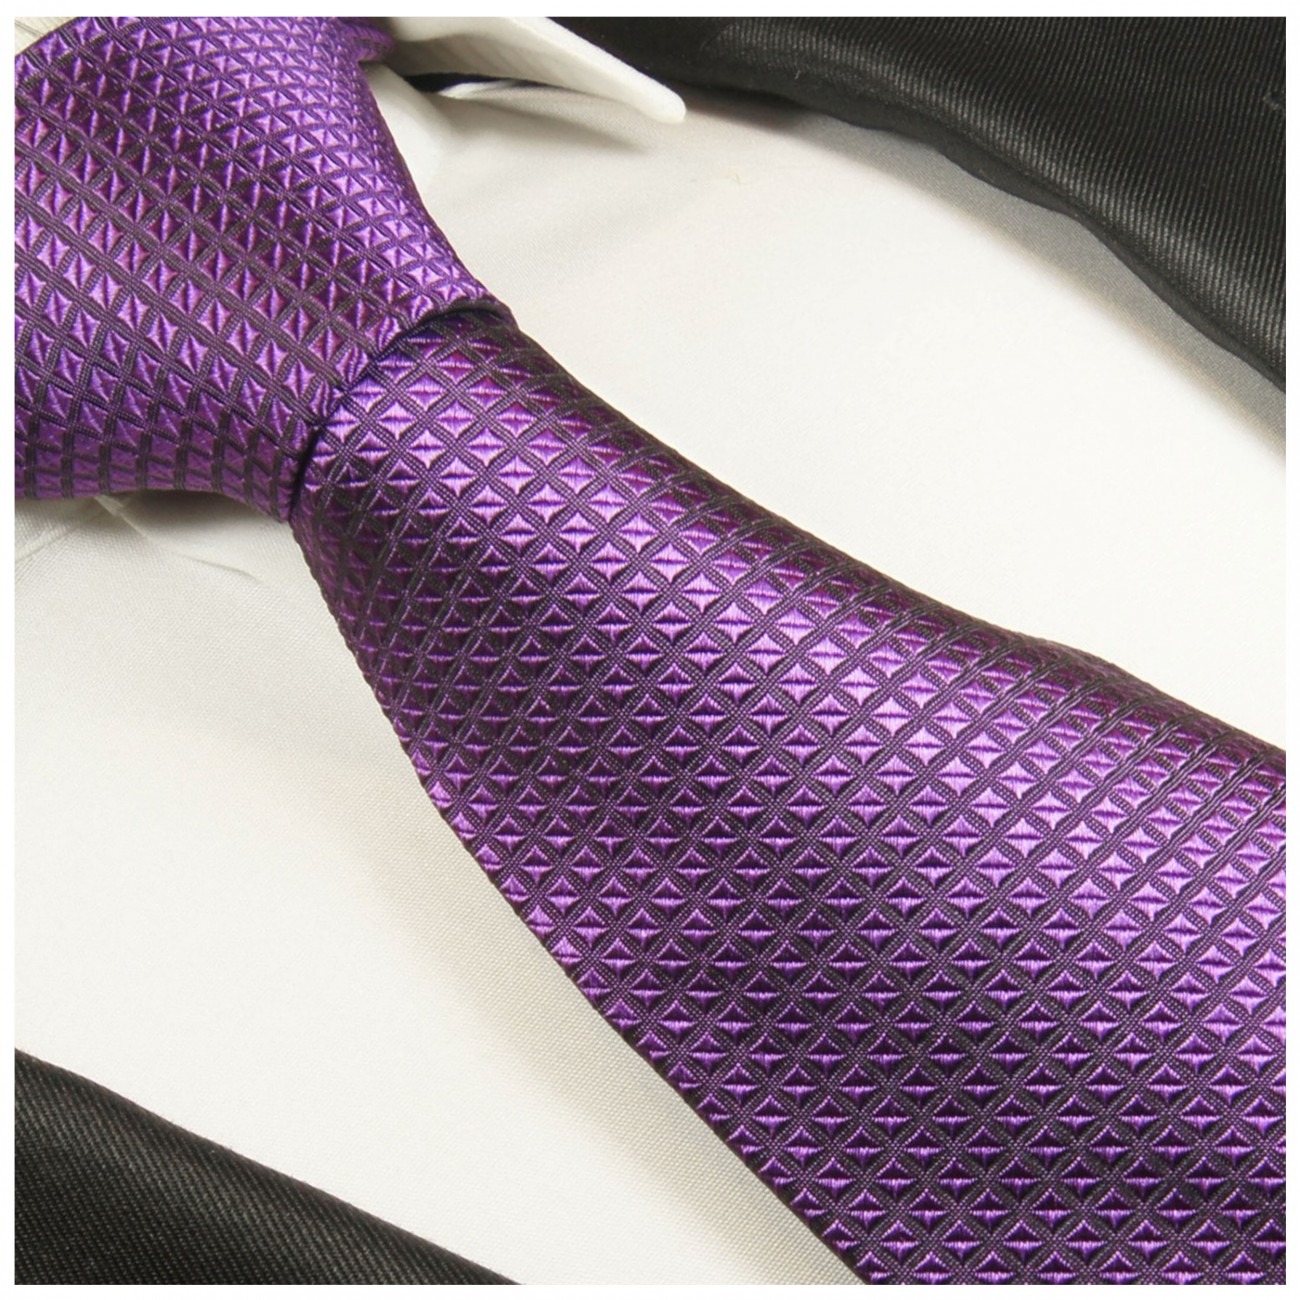 Krawatte lila violett kariert Seide